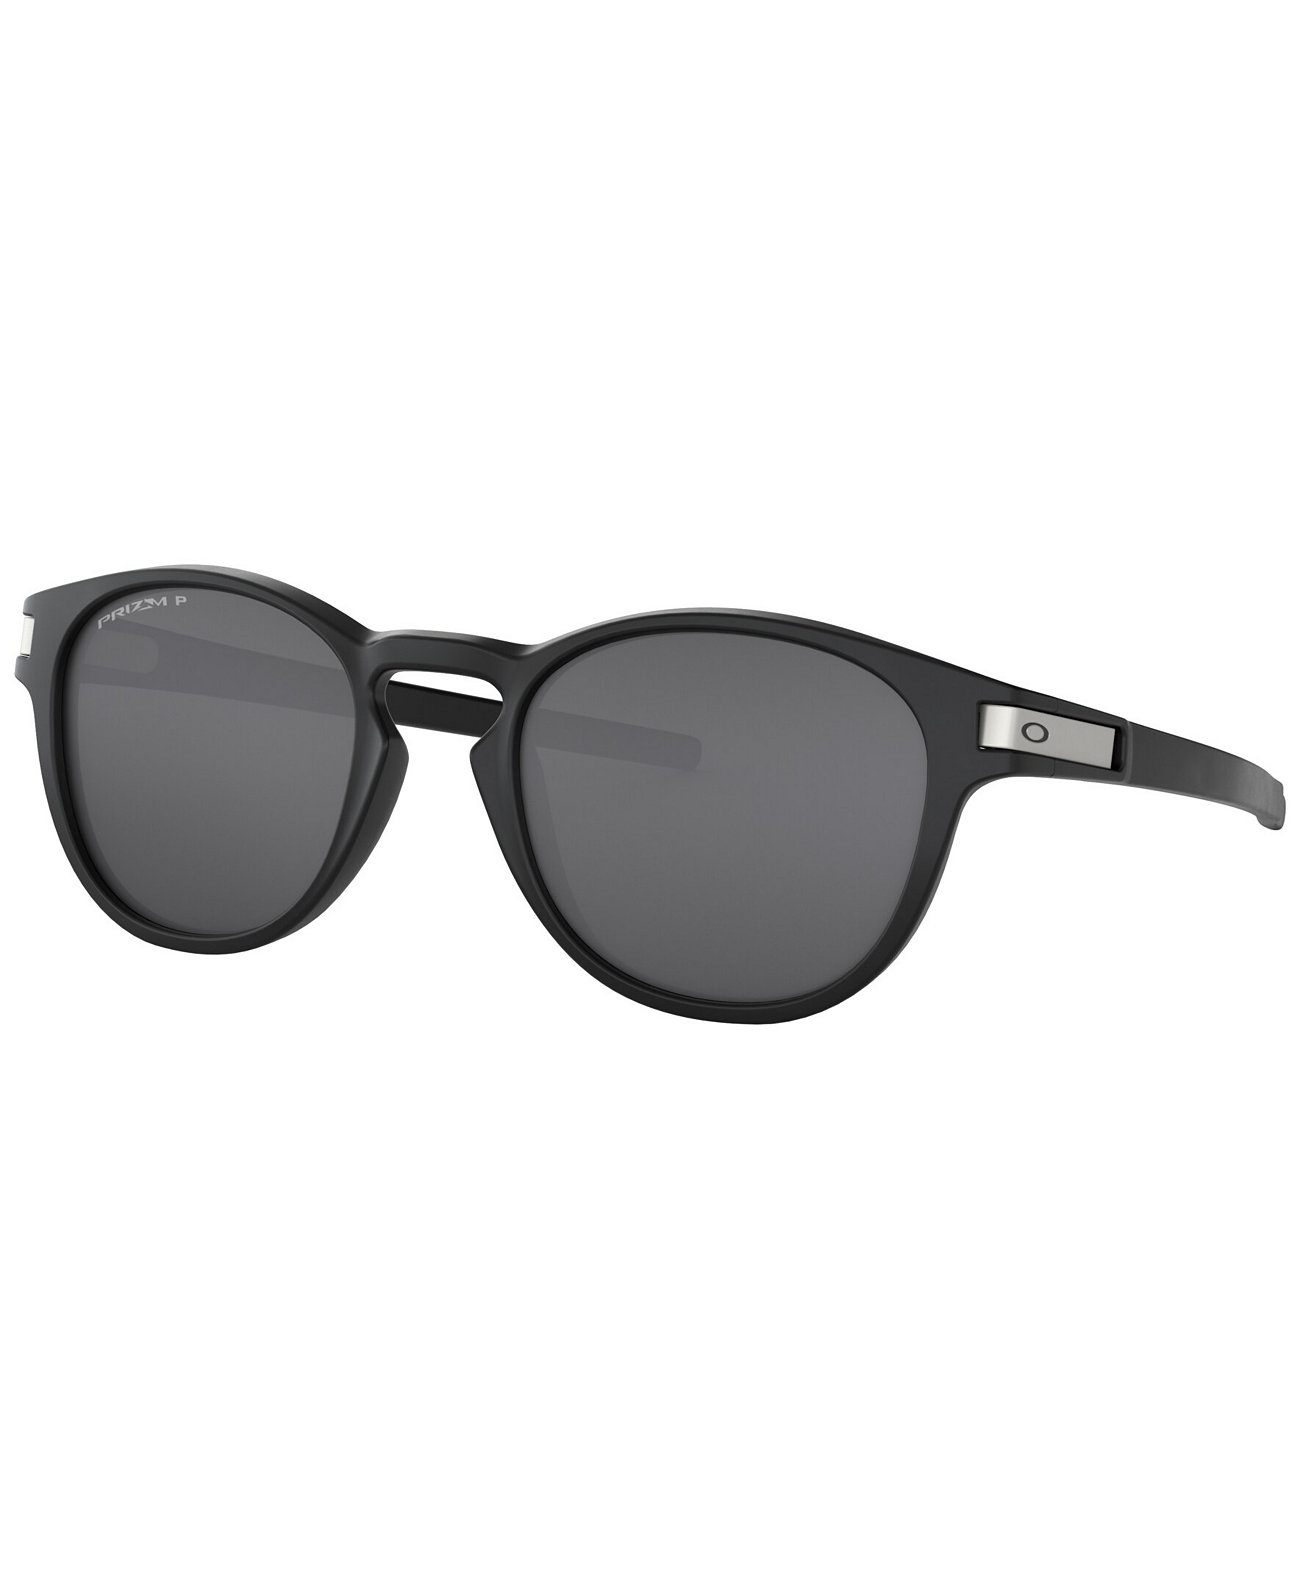 Мужские солнцезащитные очки с низким мостиком, OO9372 Flak Beta 65 Oakley